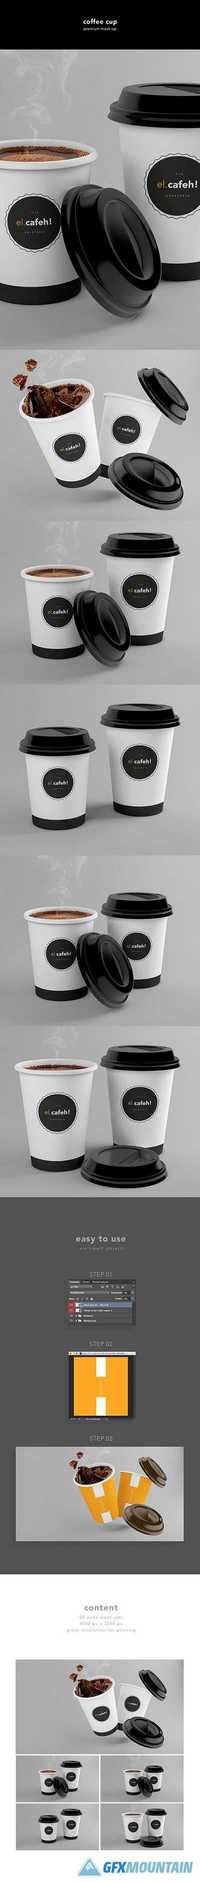 Coffee Cup - Mockup 609493